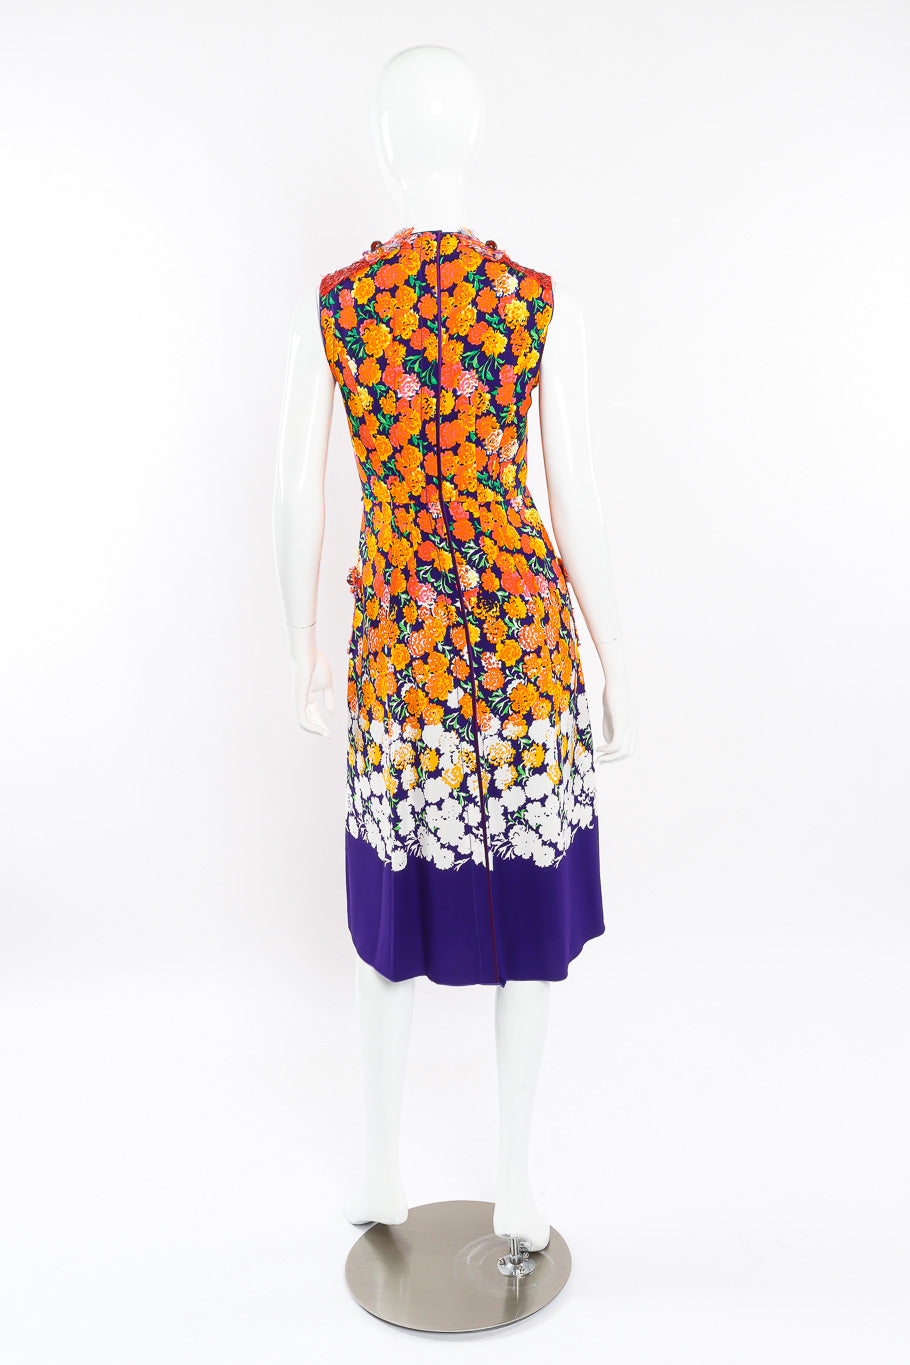 Floral lamé knit sequin dress by Marc Jacobs on mannequin back @recessla